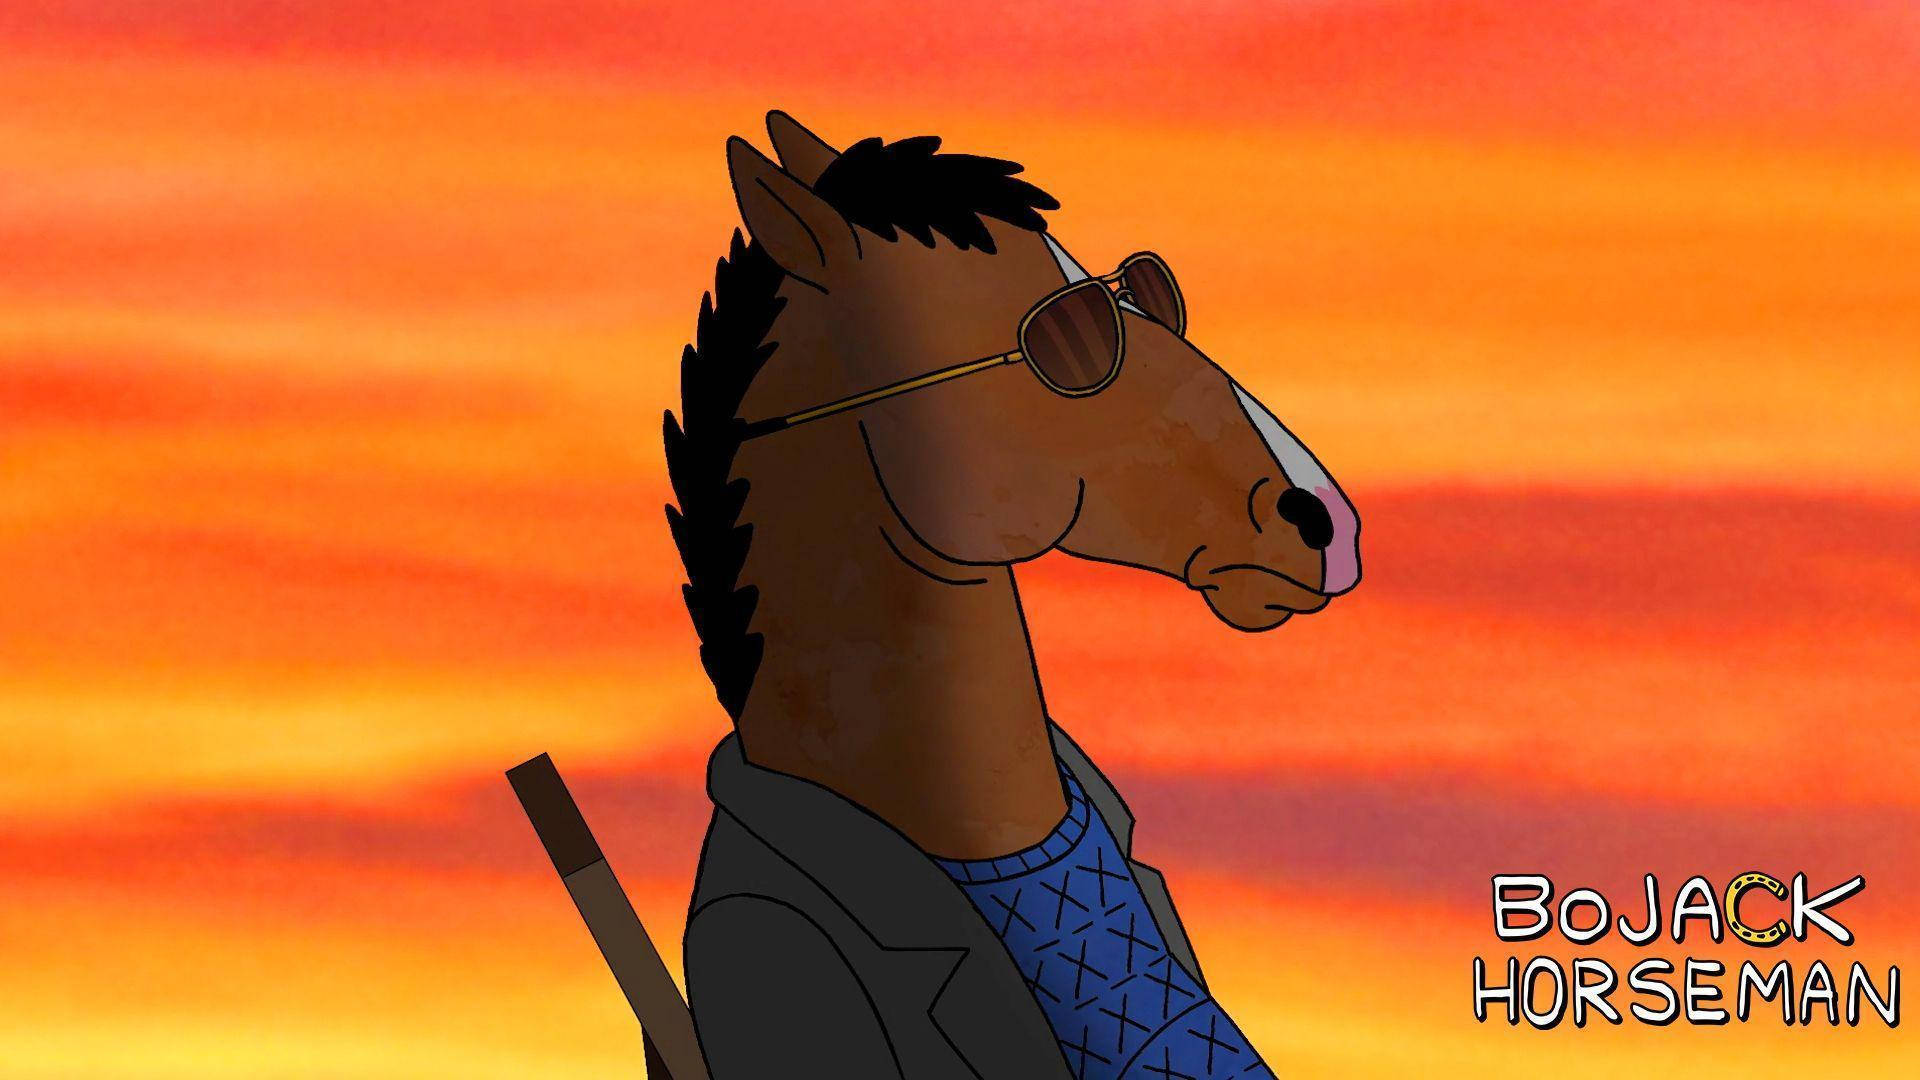 The Beloved Bojack Horseman Show Title Background